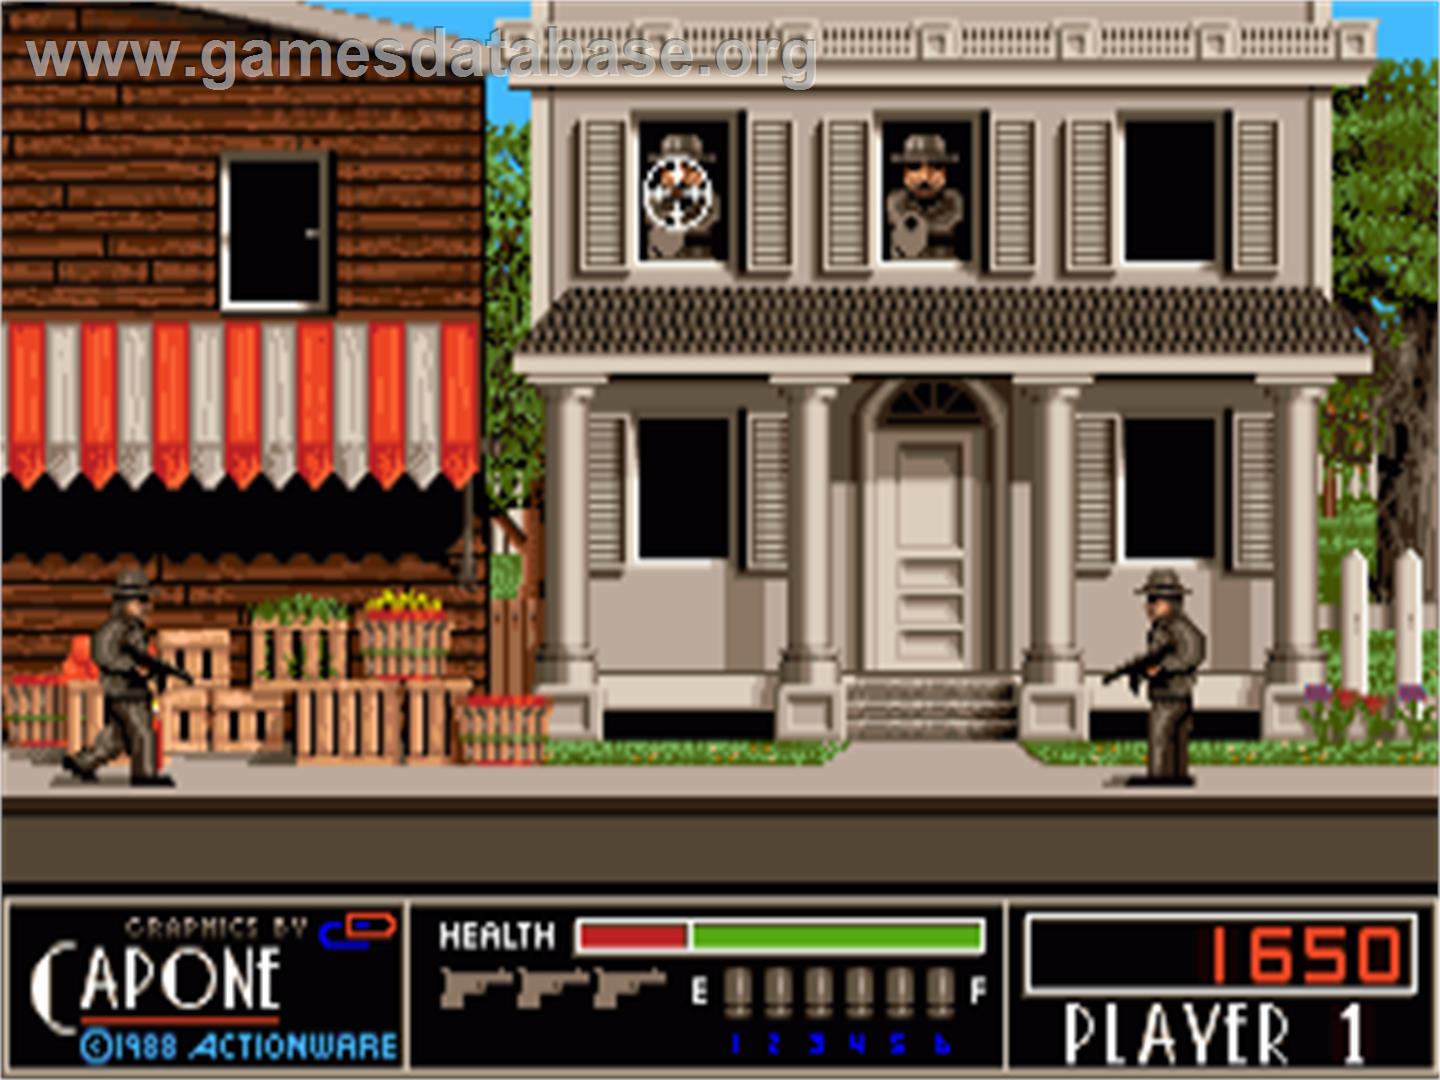 Capone - Commodore Amiga - Artwork - In Game